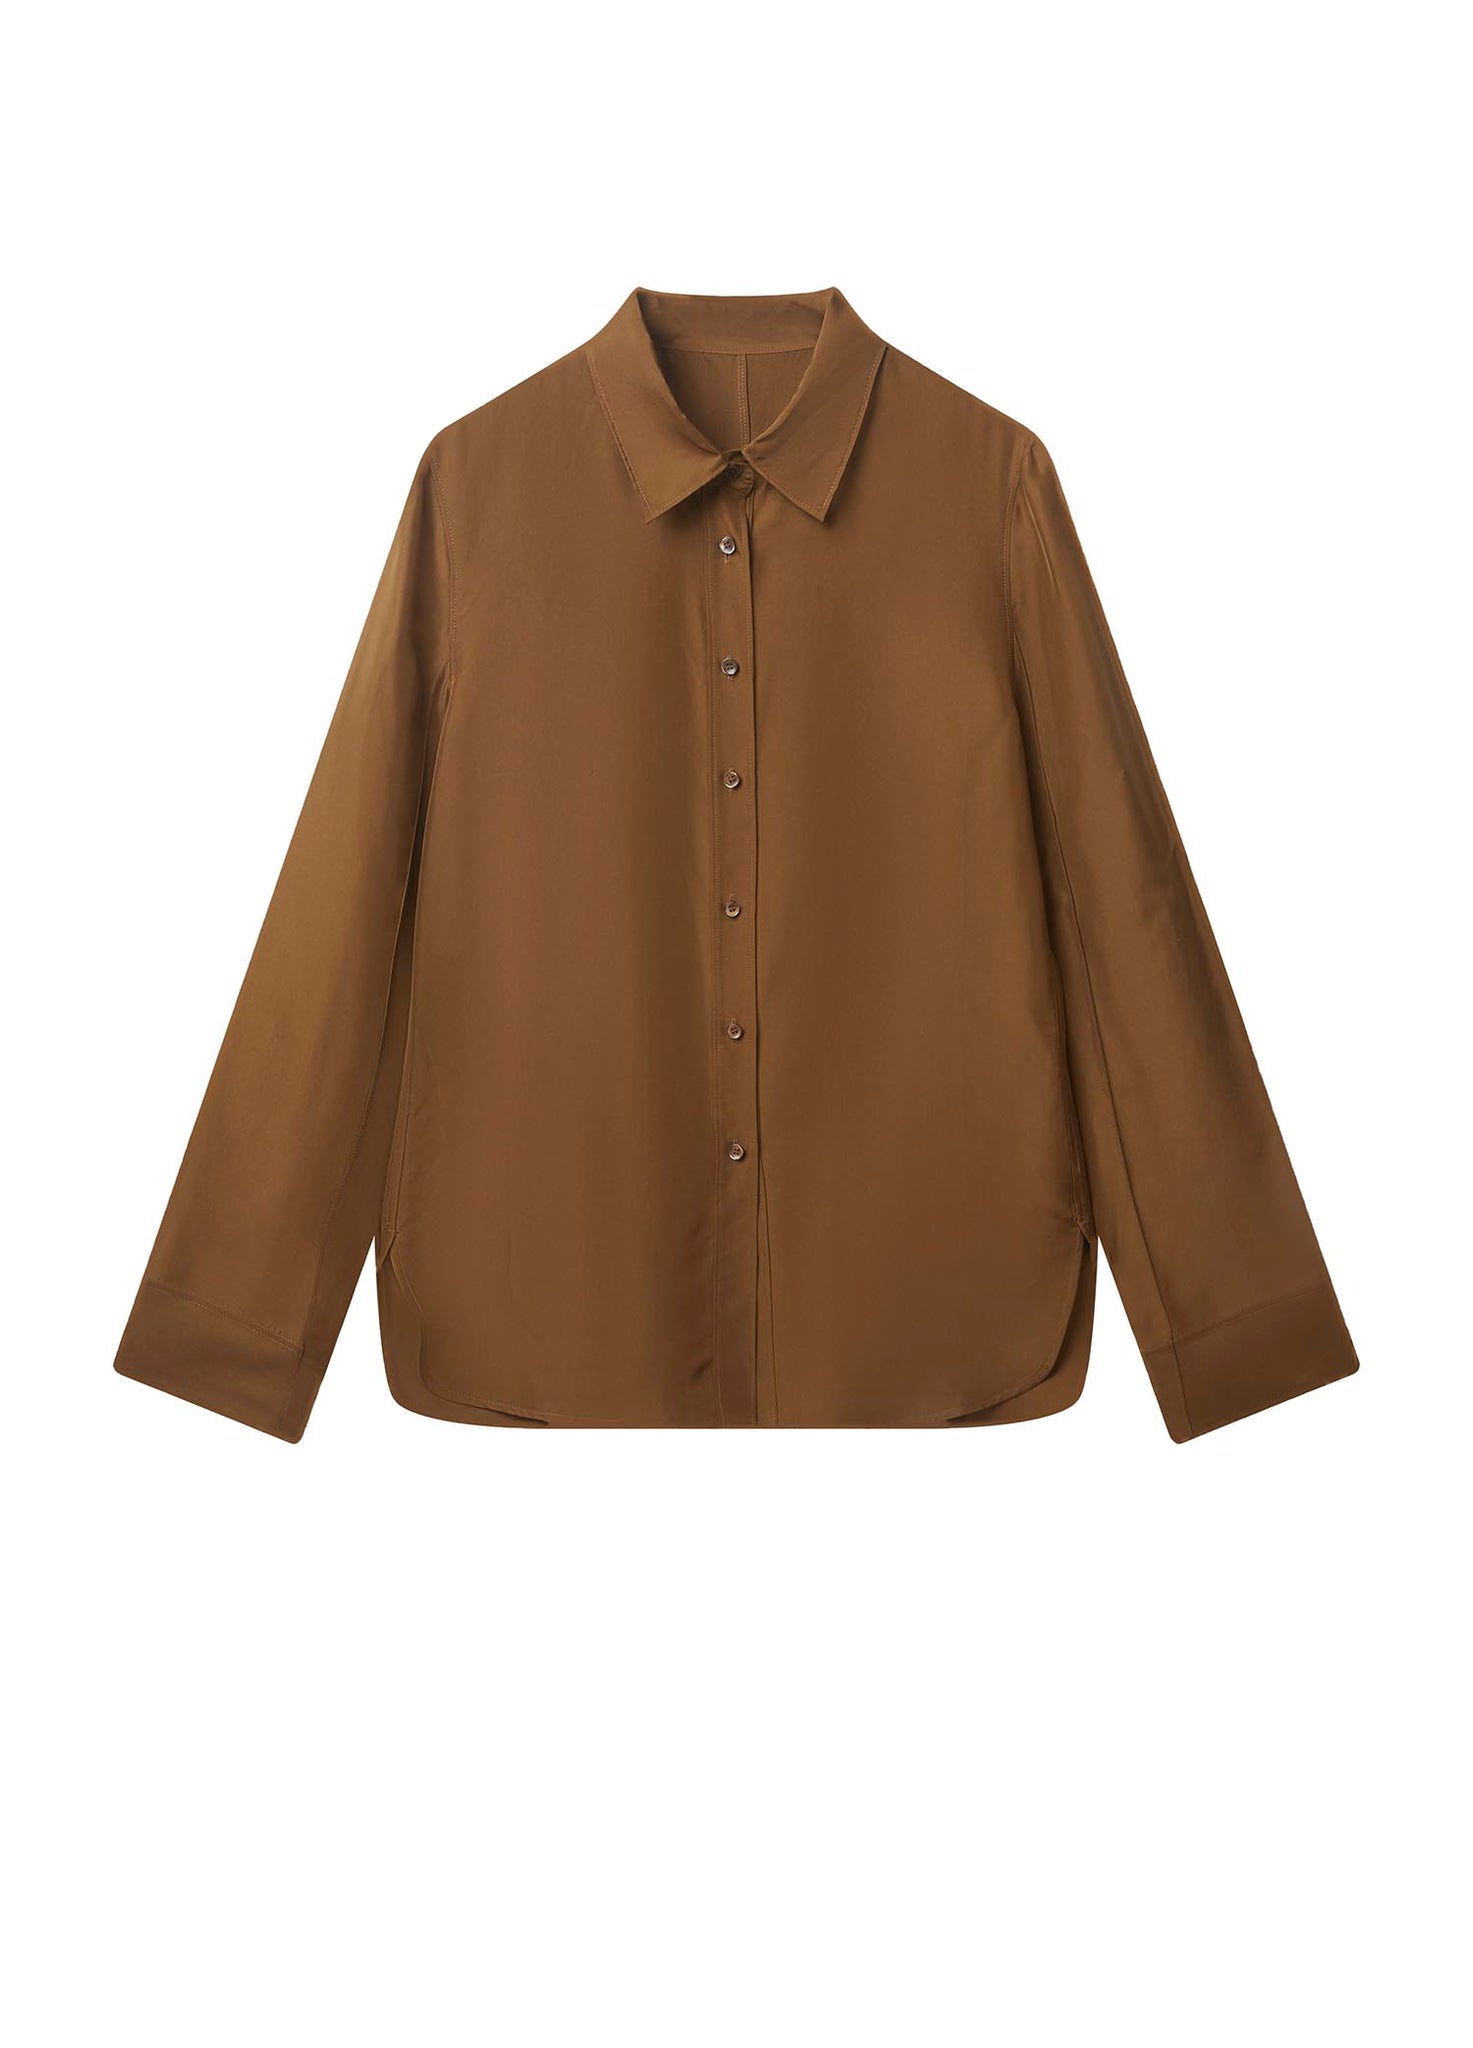 Shirt / JNBY Long Sleeve Silk Shirt (100% Silk)